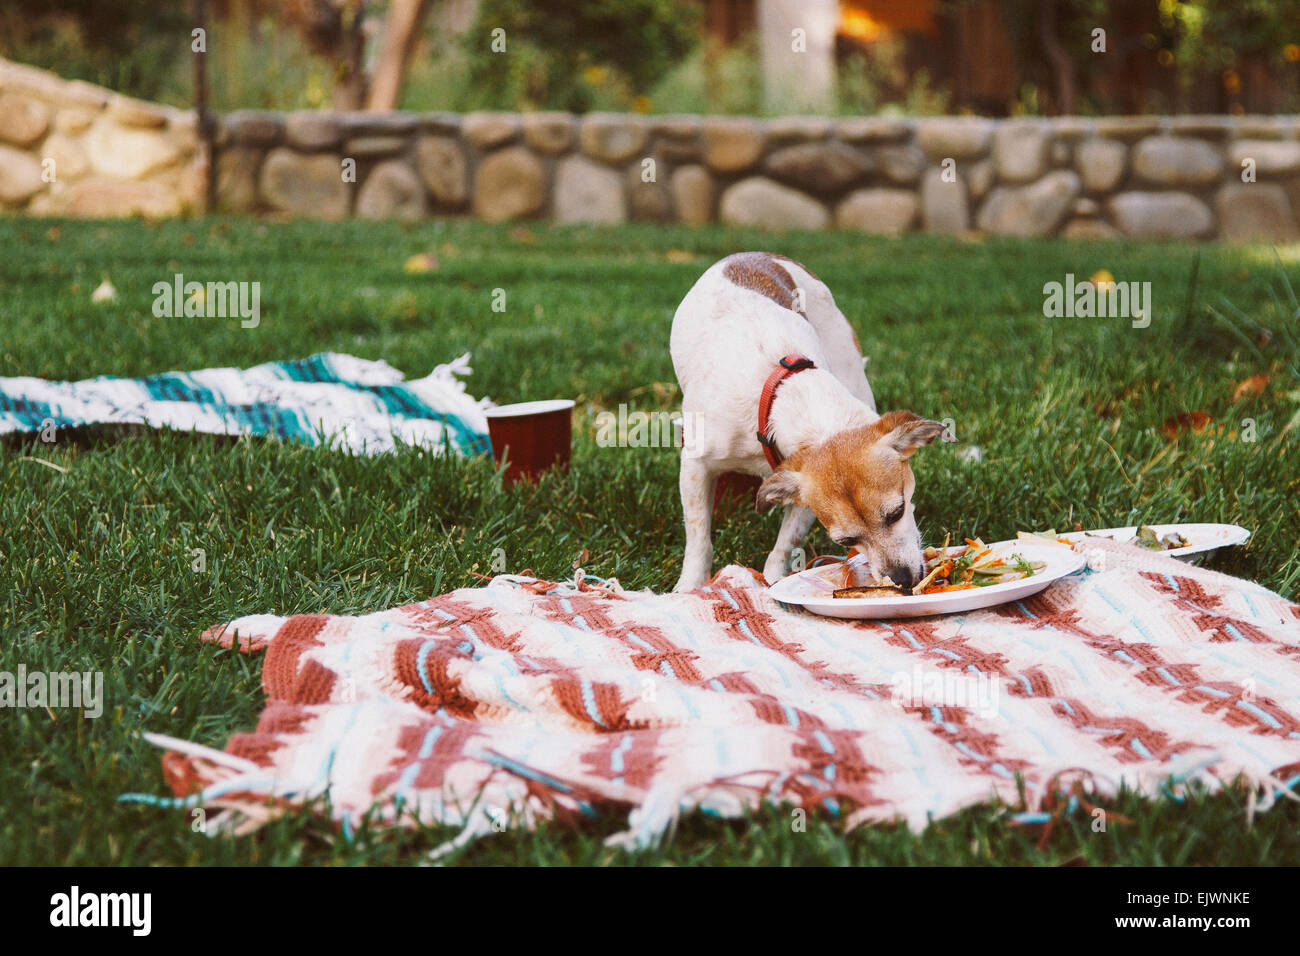 Estate barbecue nel cortile, cane si insinua una piastra per mangiare Foto Stock